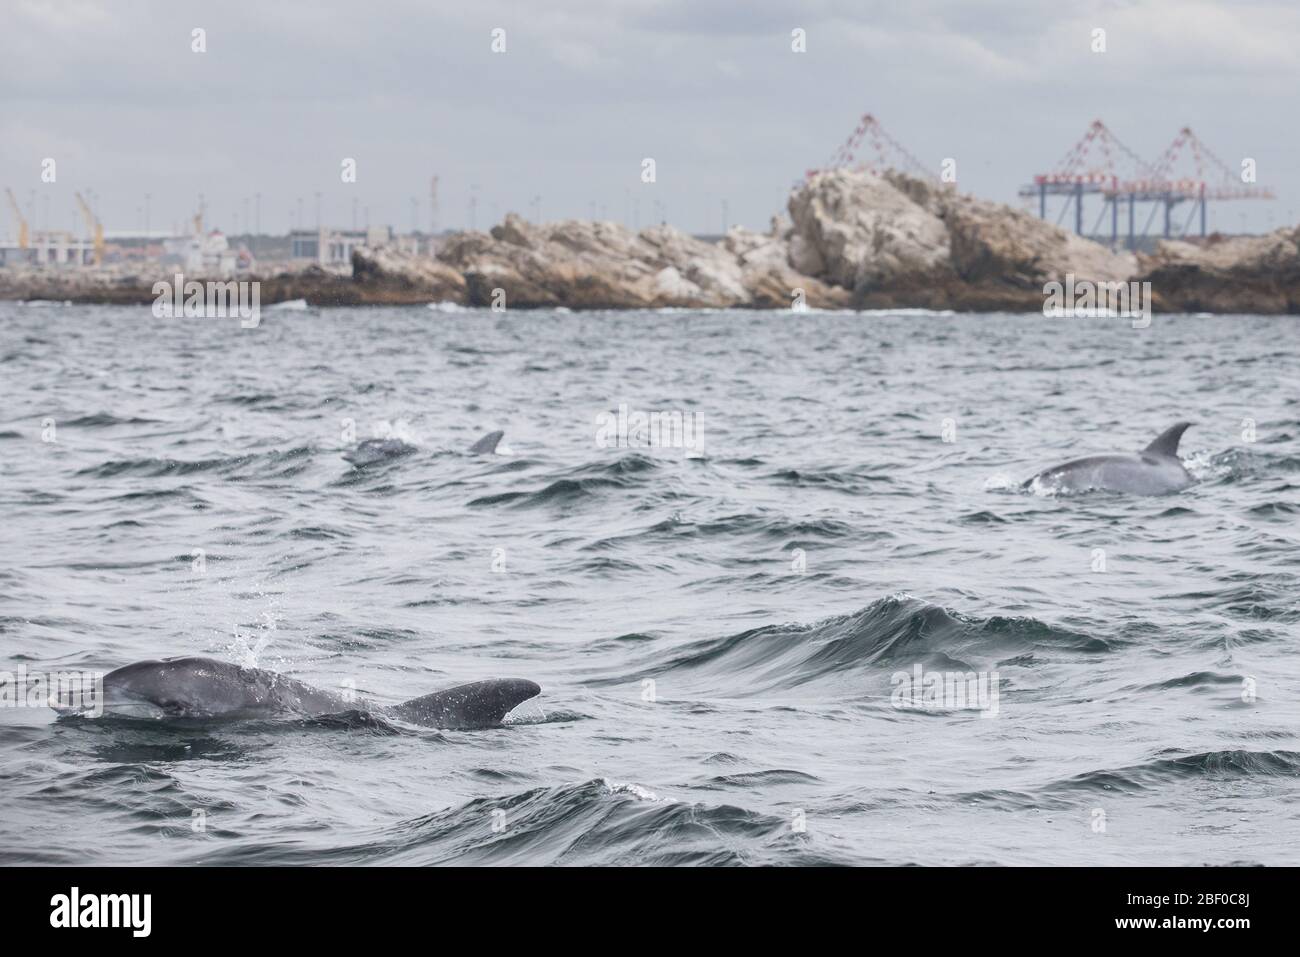 Un pod di delfini tursiops indoPacifico, Tursiops aduncus, nuota attraverso l'Oceano Indiano, Algoa Bay, Nelson Mandela Bay, Port Elizabeth, Sud Africa Foto Stock